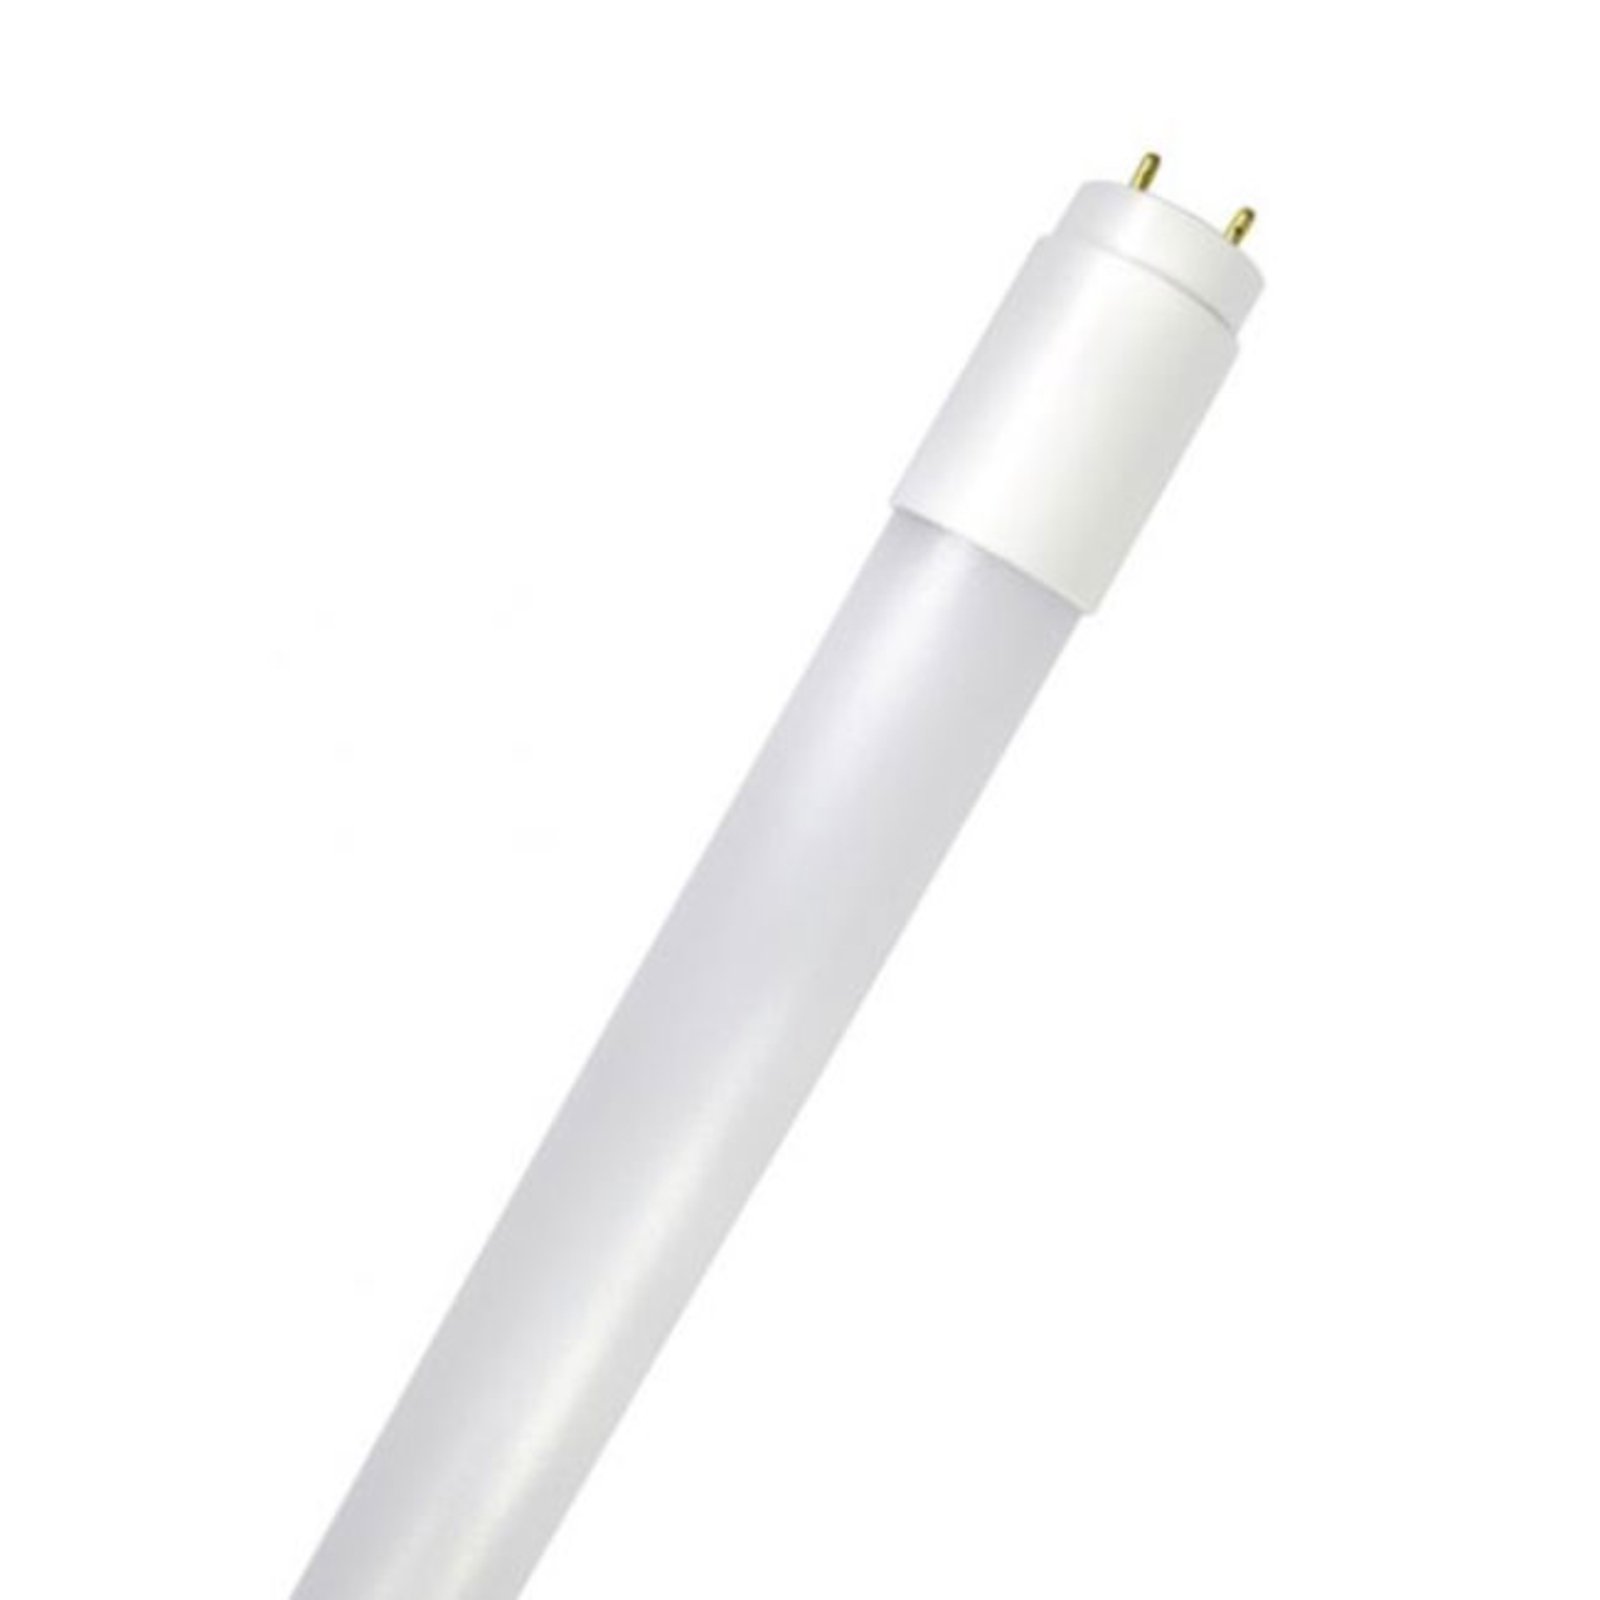 LED tube GoLeaf T8 G13 full spectrum 16 W 120 cm